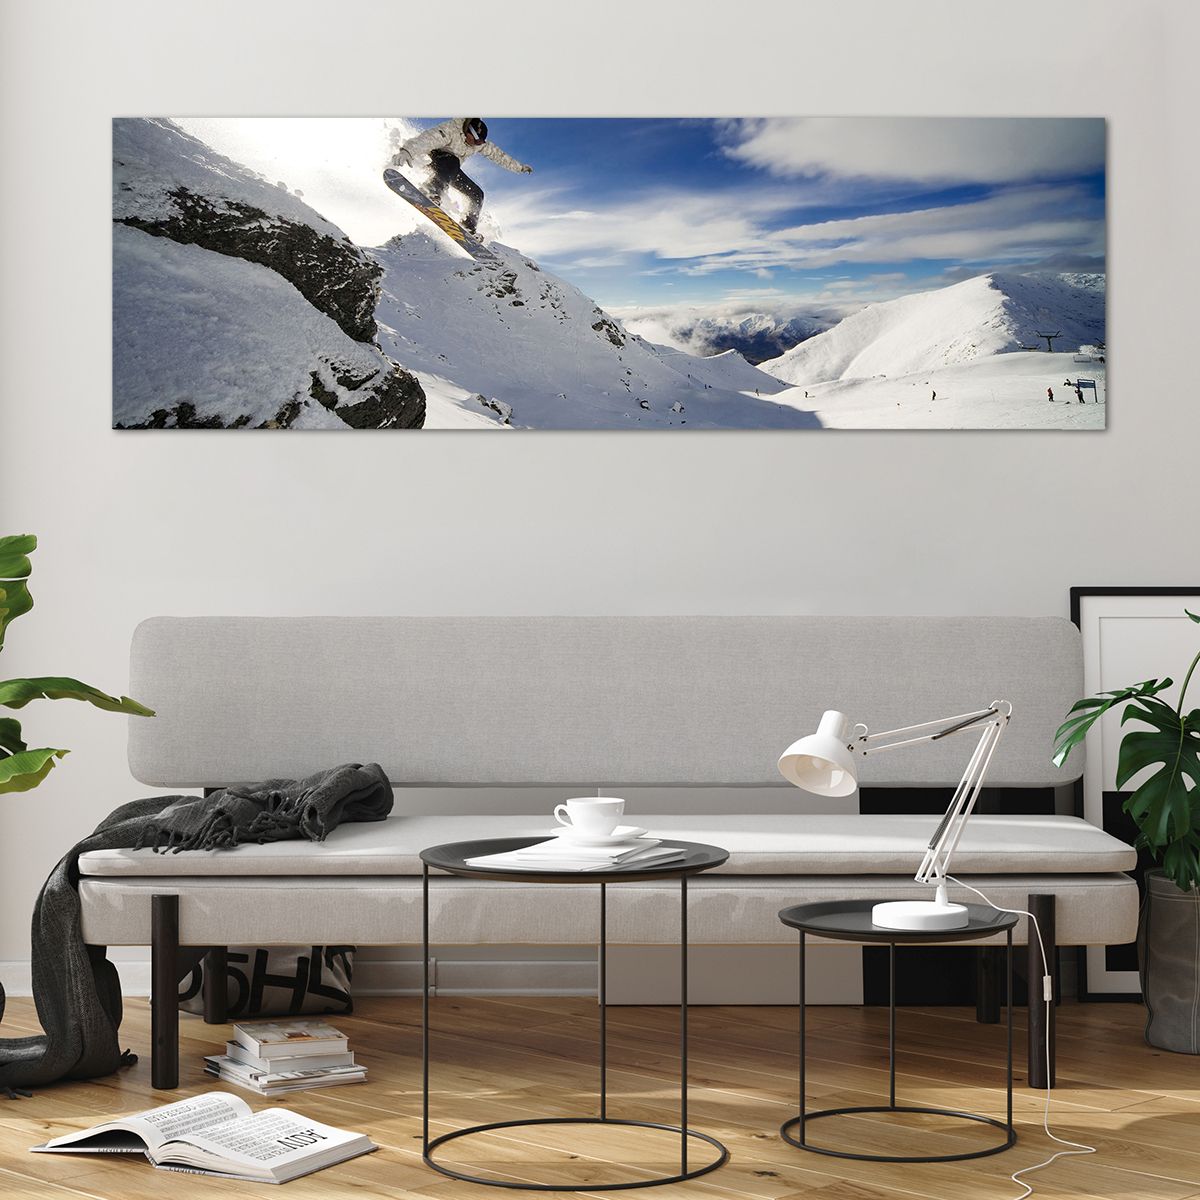 Bilder auf glas Snowboard, Bilder auf glas Landschaft, Bilder auf glas Berge, Bilder auf glas Schnee, Bilder auf glas Sport